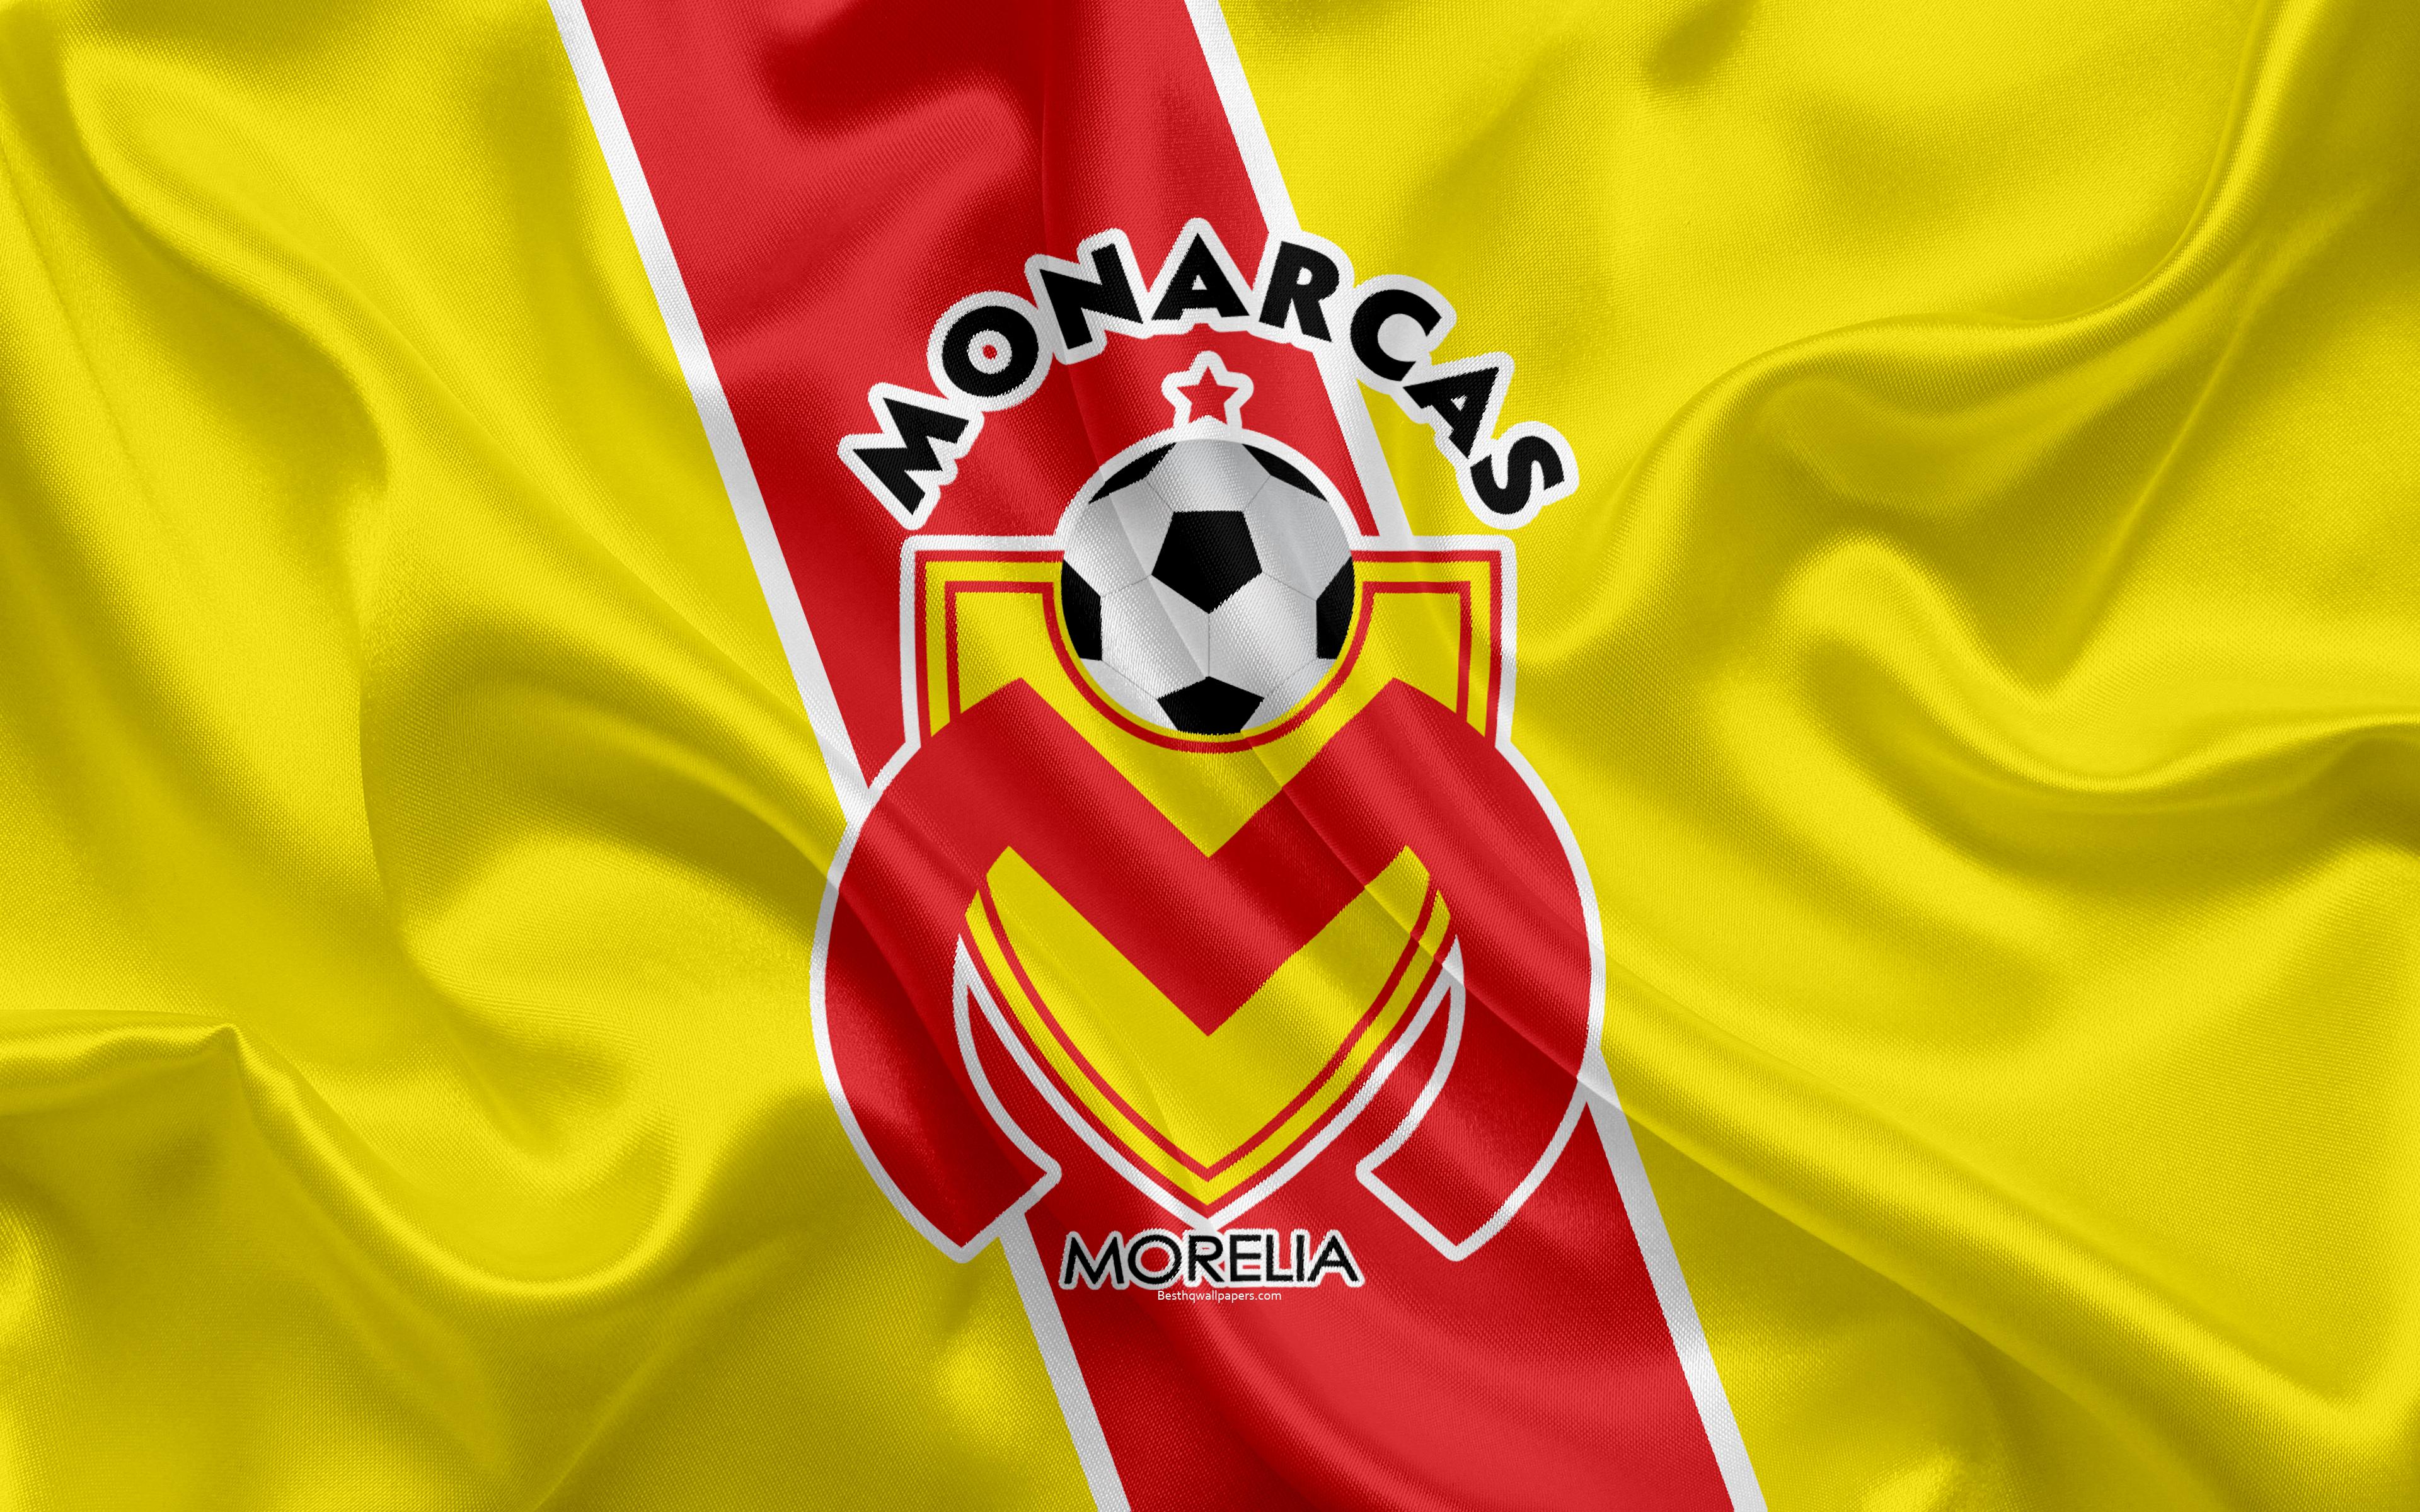 Download wallpaper Monarcas FC, 4K, Mexican Football Club, emblem